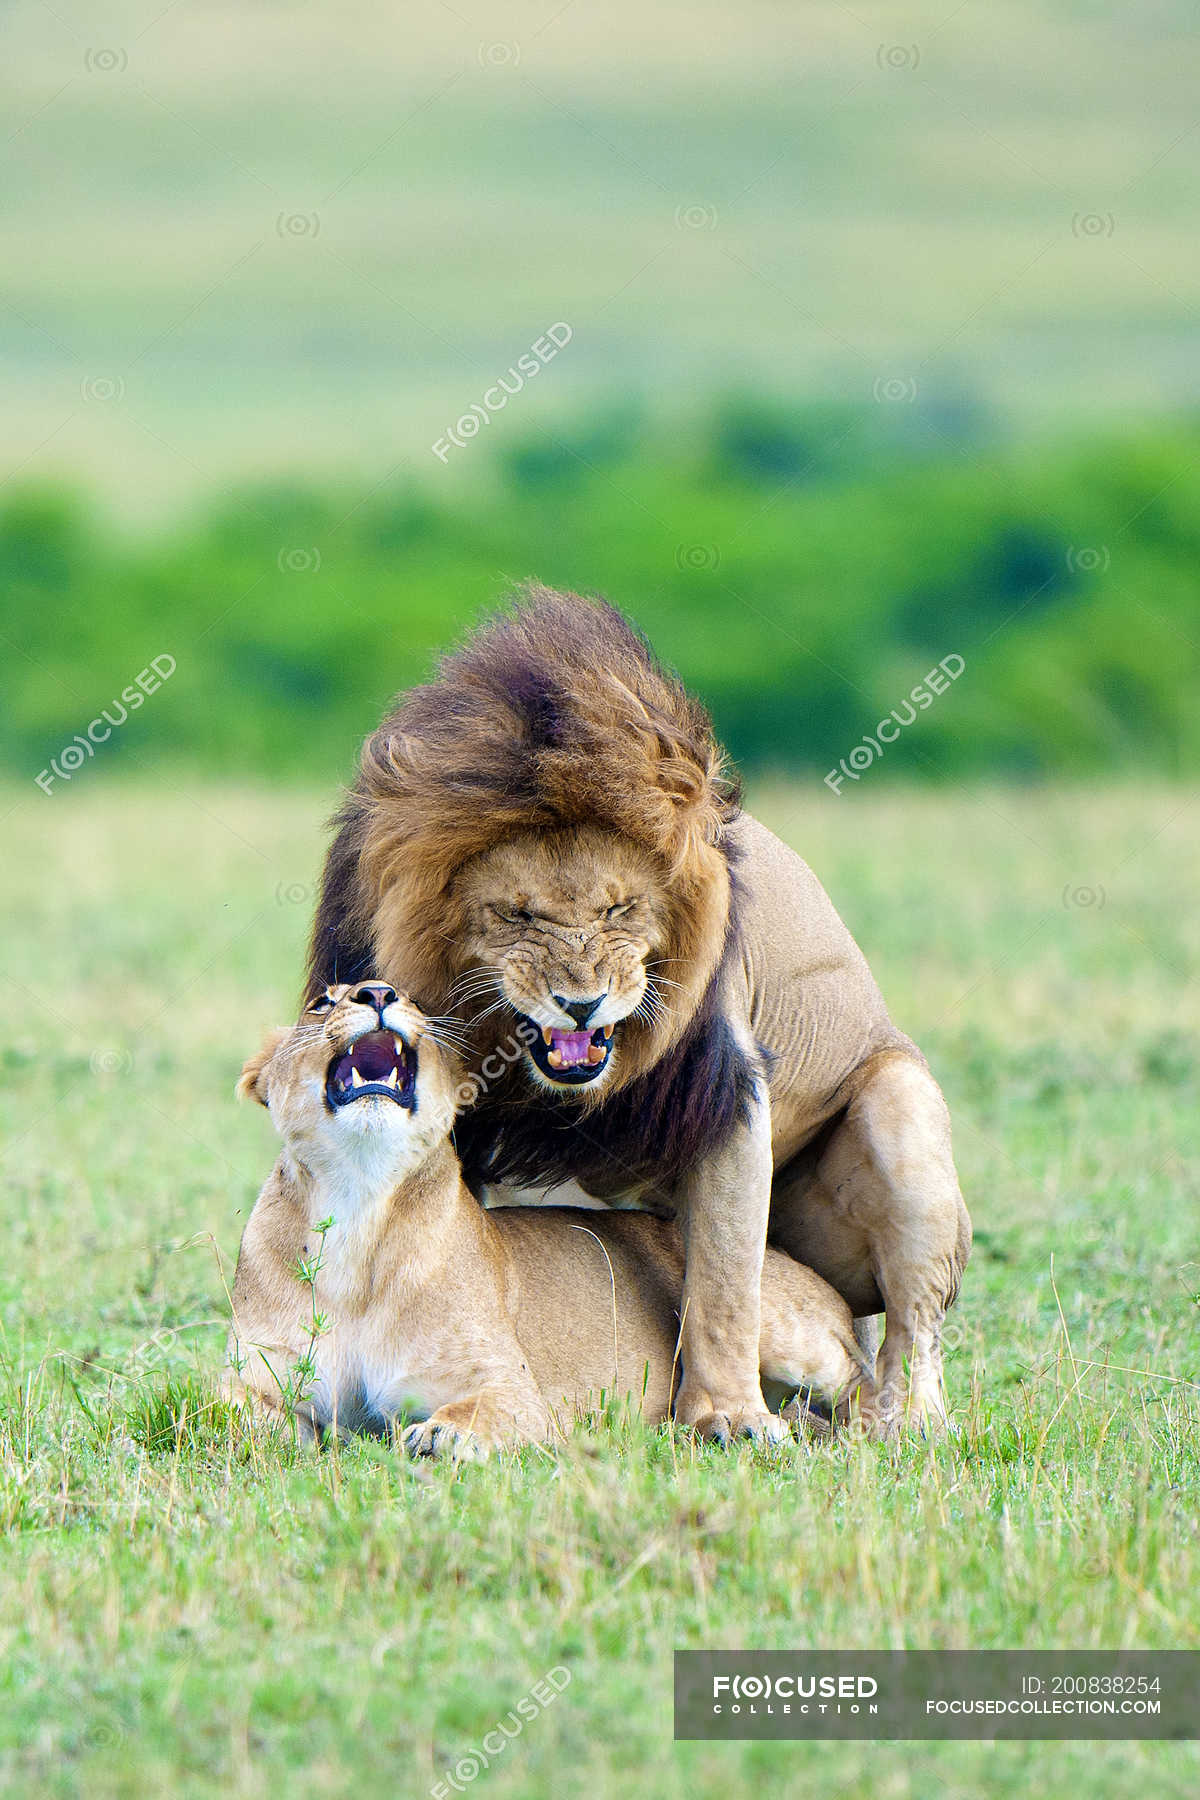 Top 89+ imagen fotos de leones apareandose